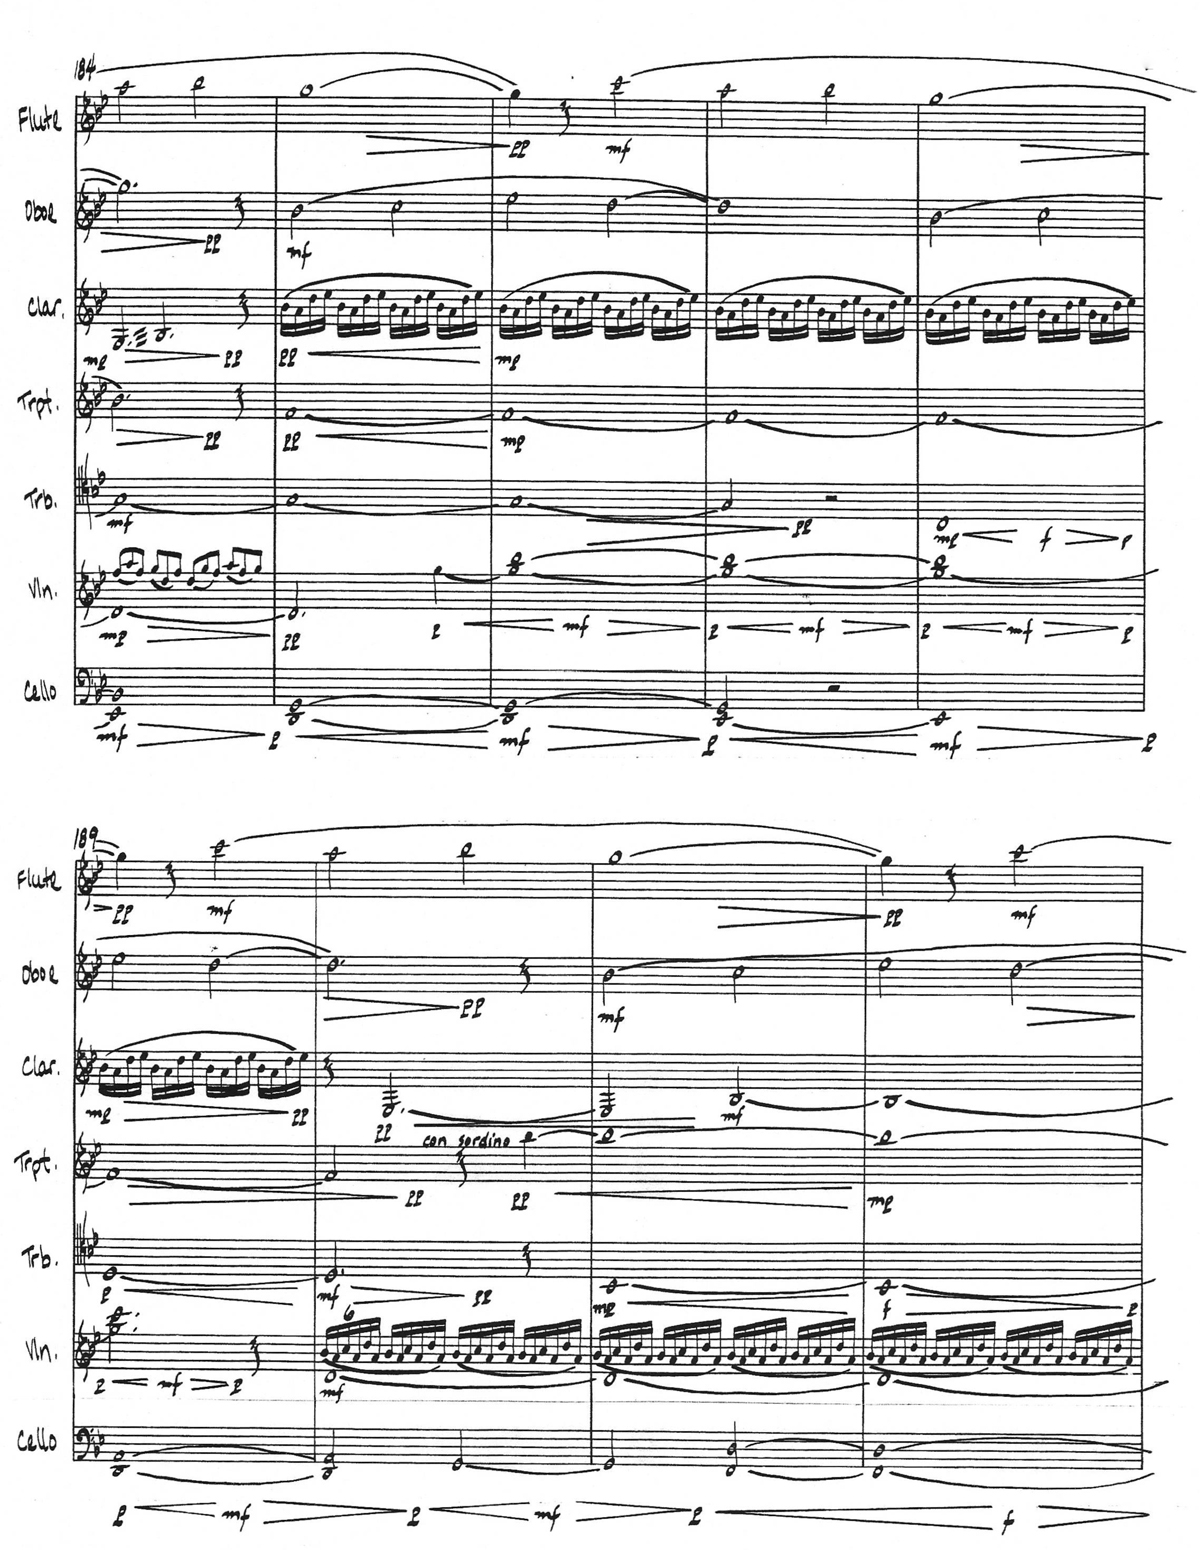 Handwritten musical score for chamber ensemble by Paul Dresher